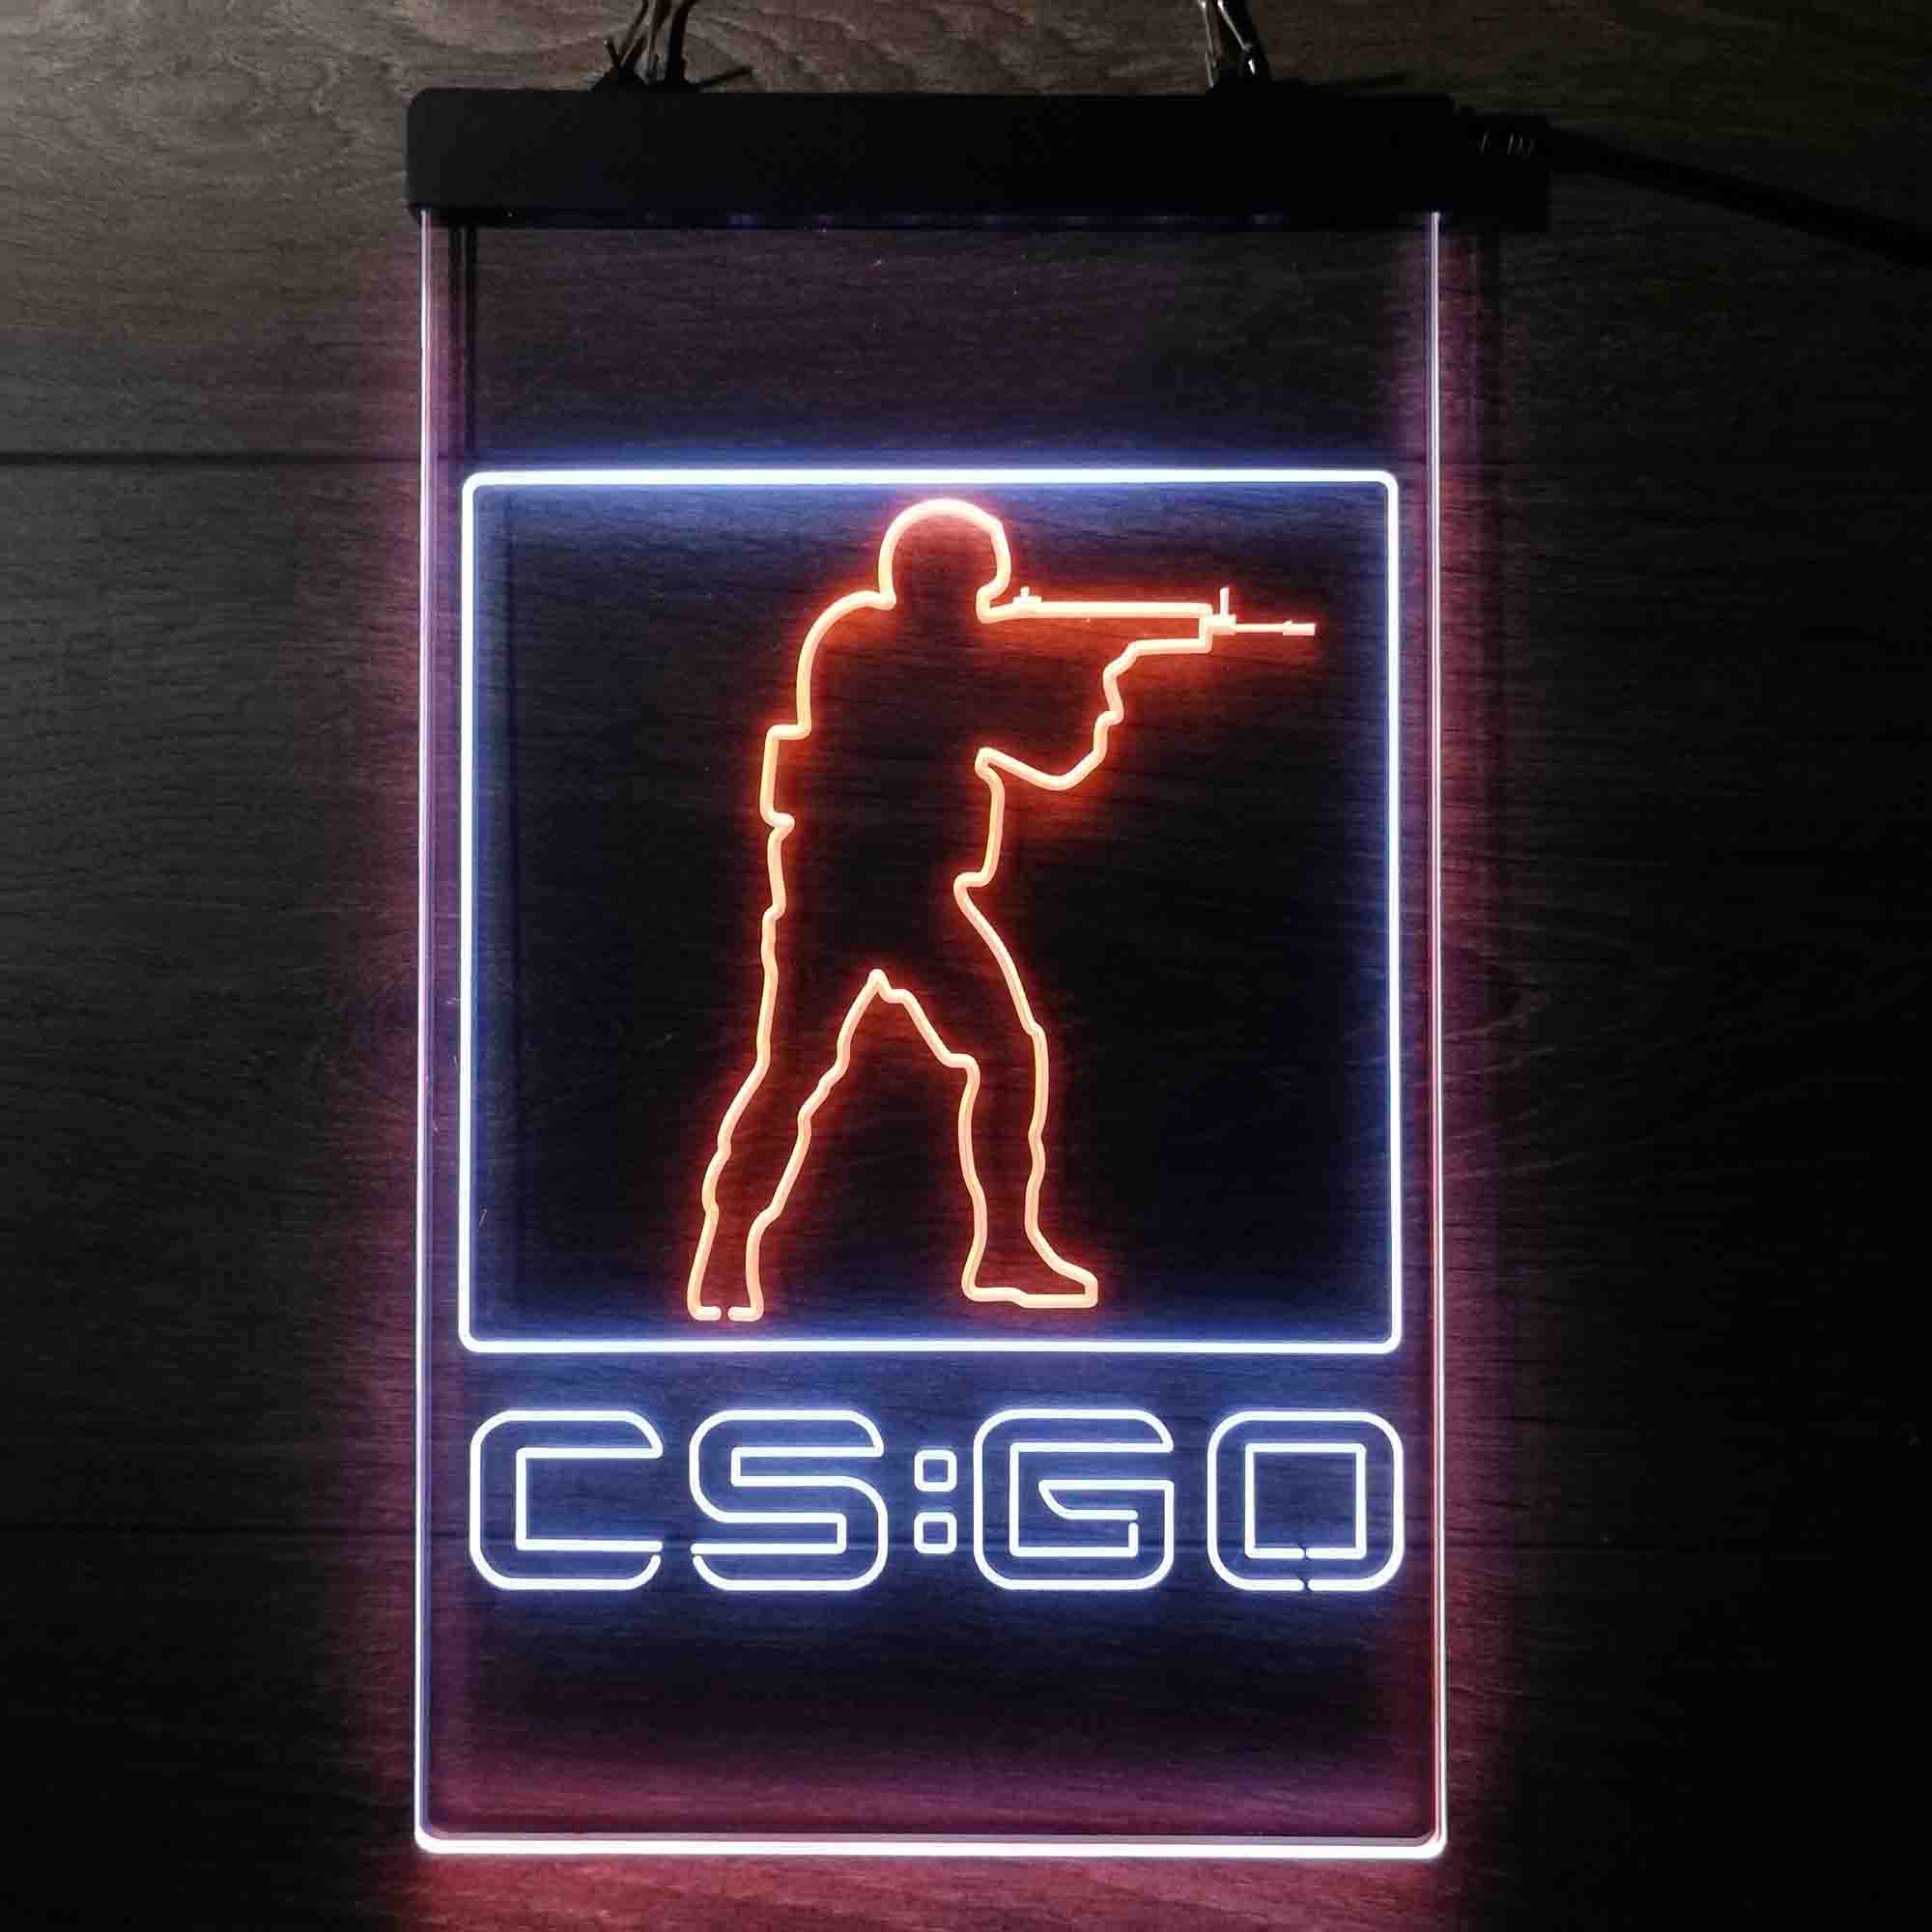 Cs:Go Counter Strike Game Room Neon Light LED Sign